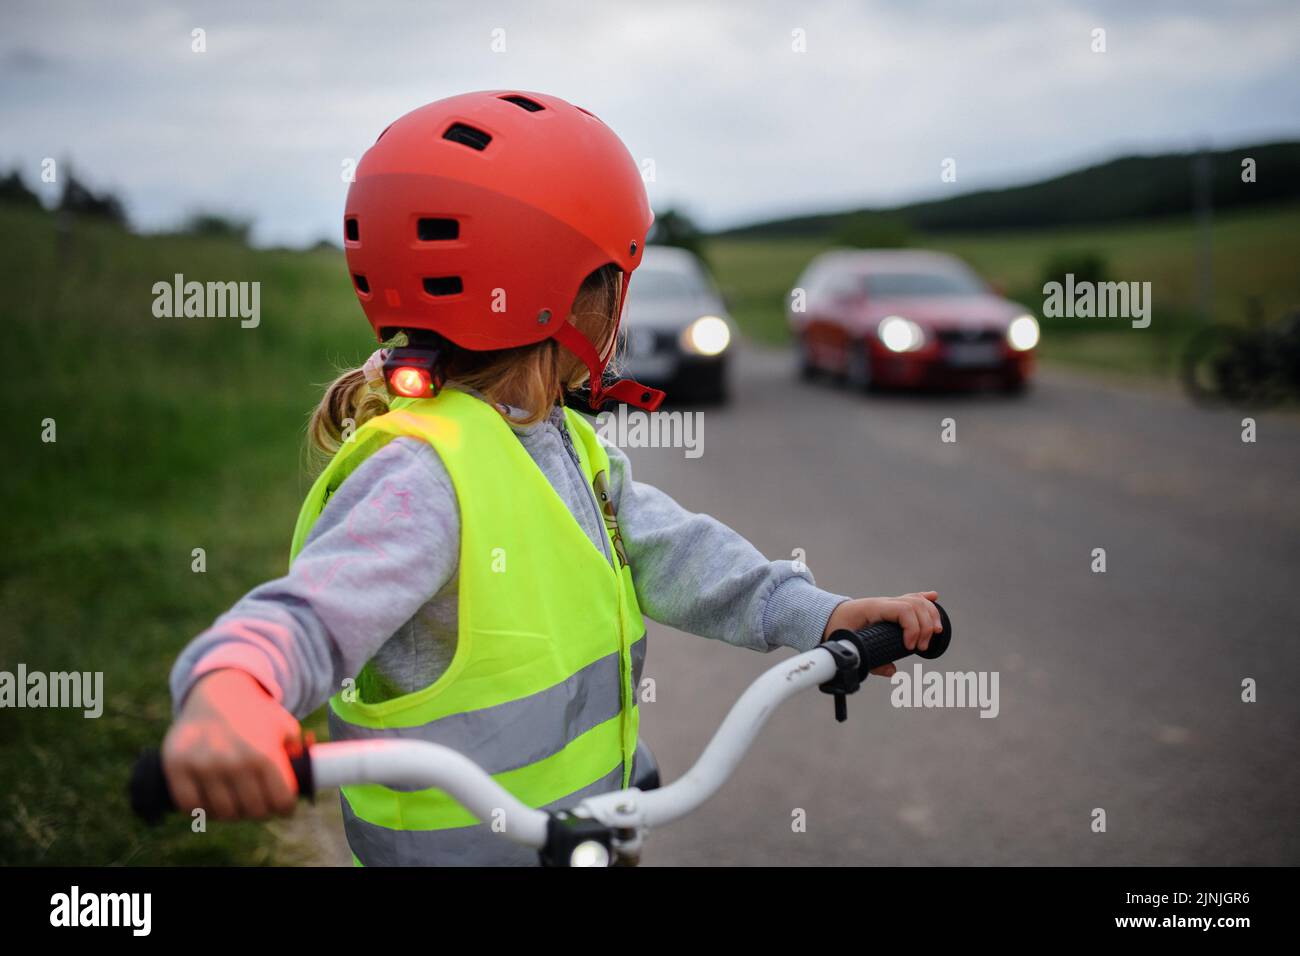 Vista posteriore della bambina in bici riflettente giubbotto di guida su strada con auto dietro di lei, concetto di educazione sulla sicurezza stradale. Foto Stock